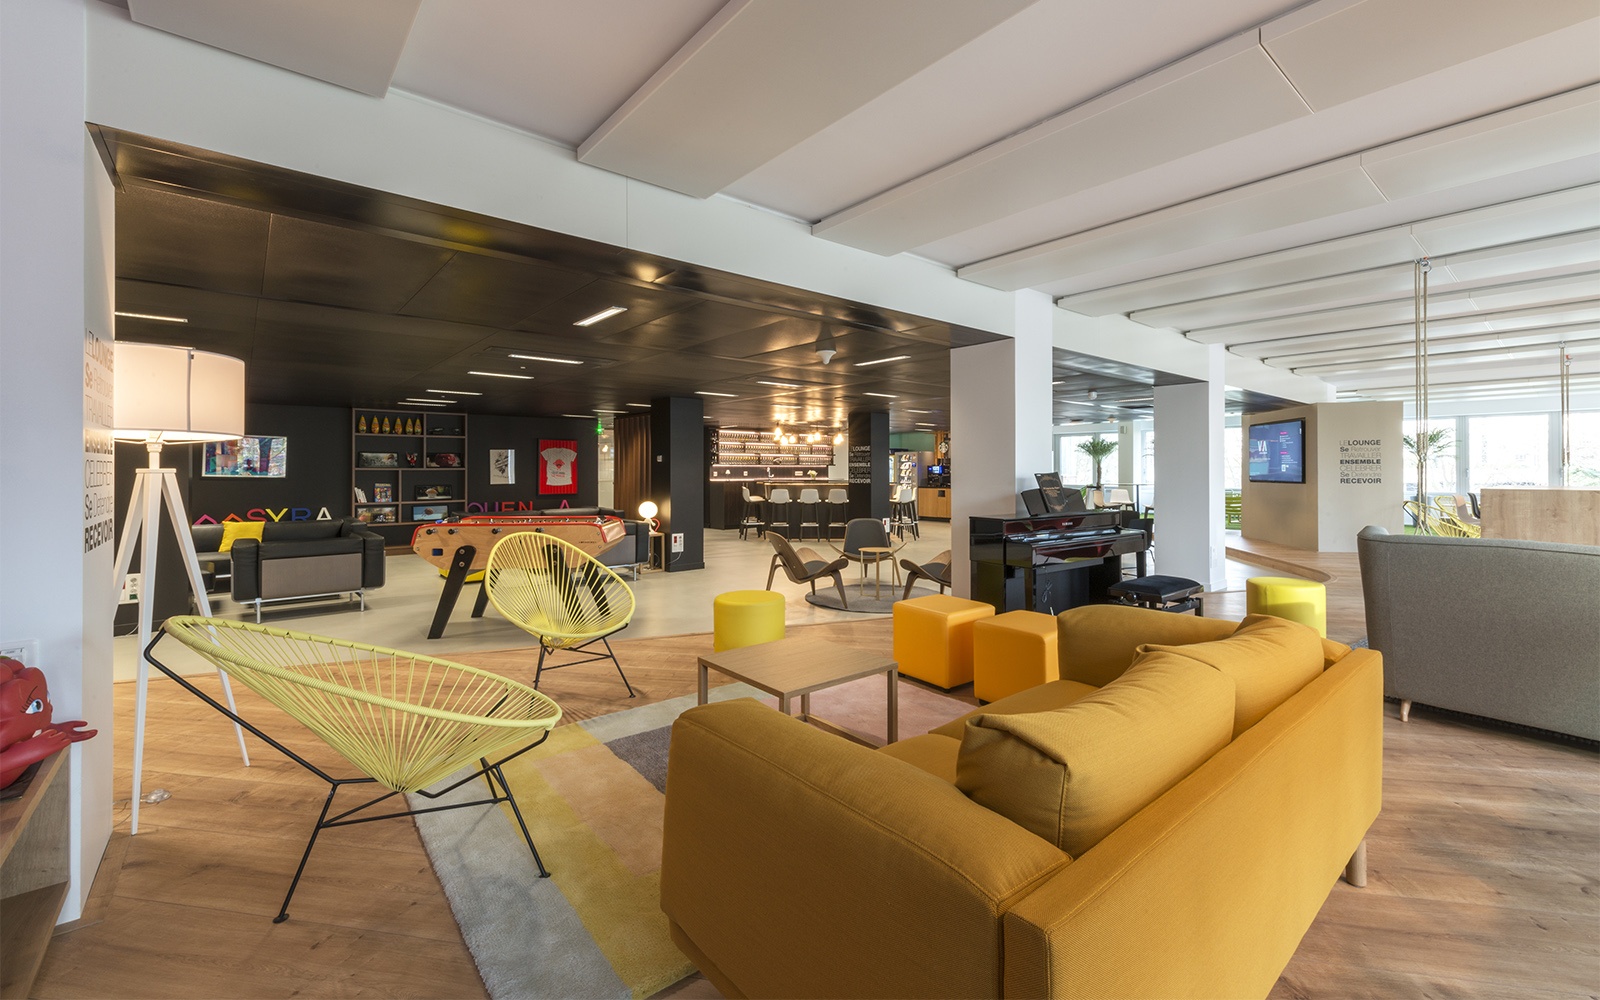 Teppich Büro: Farbenfrohes Mobiliar passend zur Marke und Einrichtung der Büros